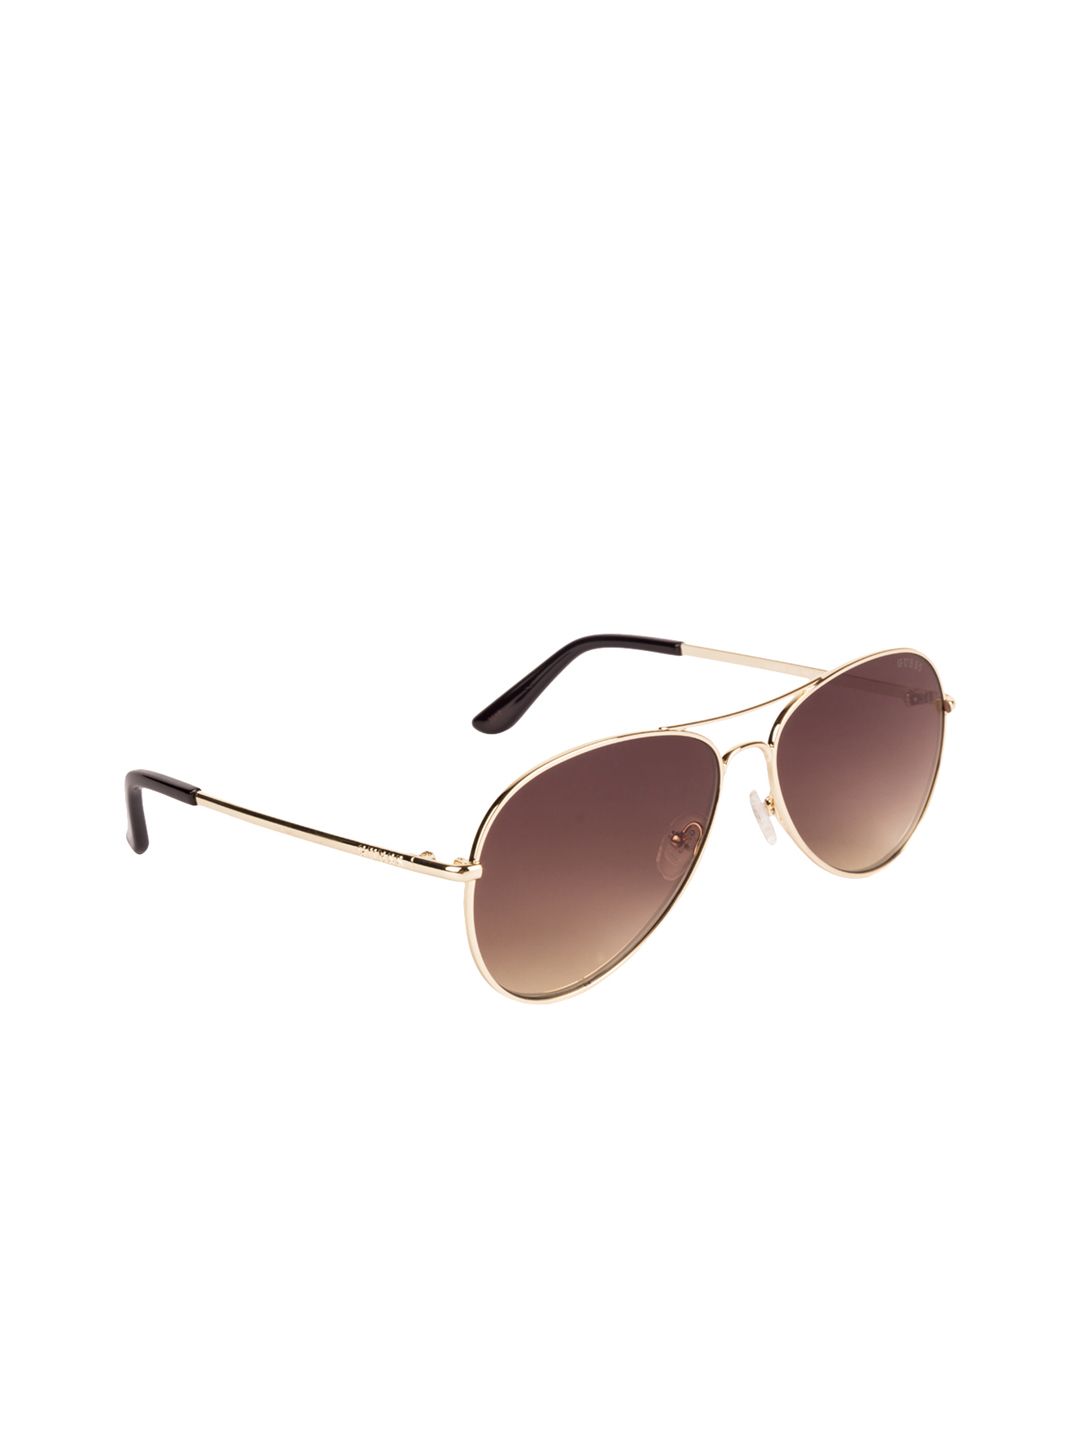 GUESS Women Aviator Sunglasses GU6925 58 32G Price in India